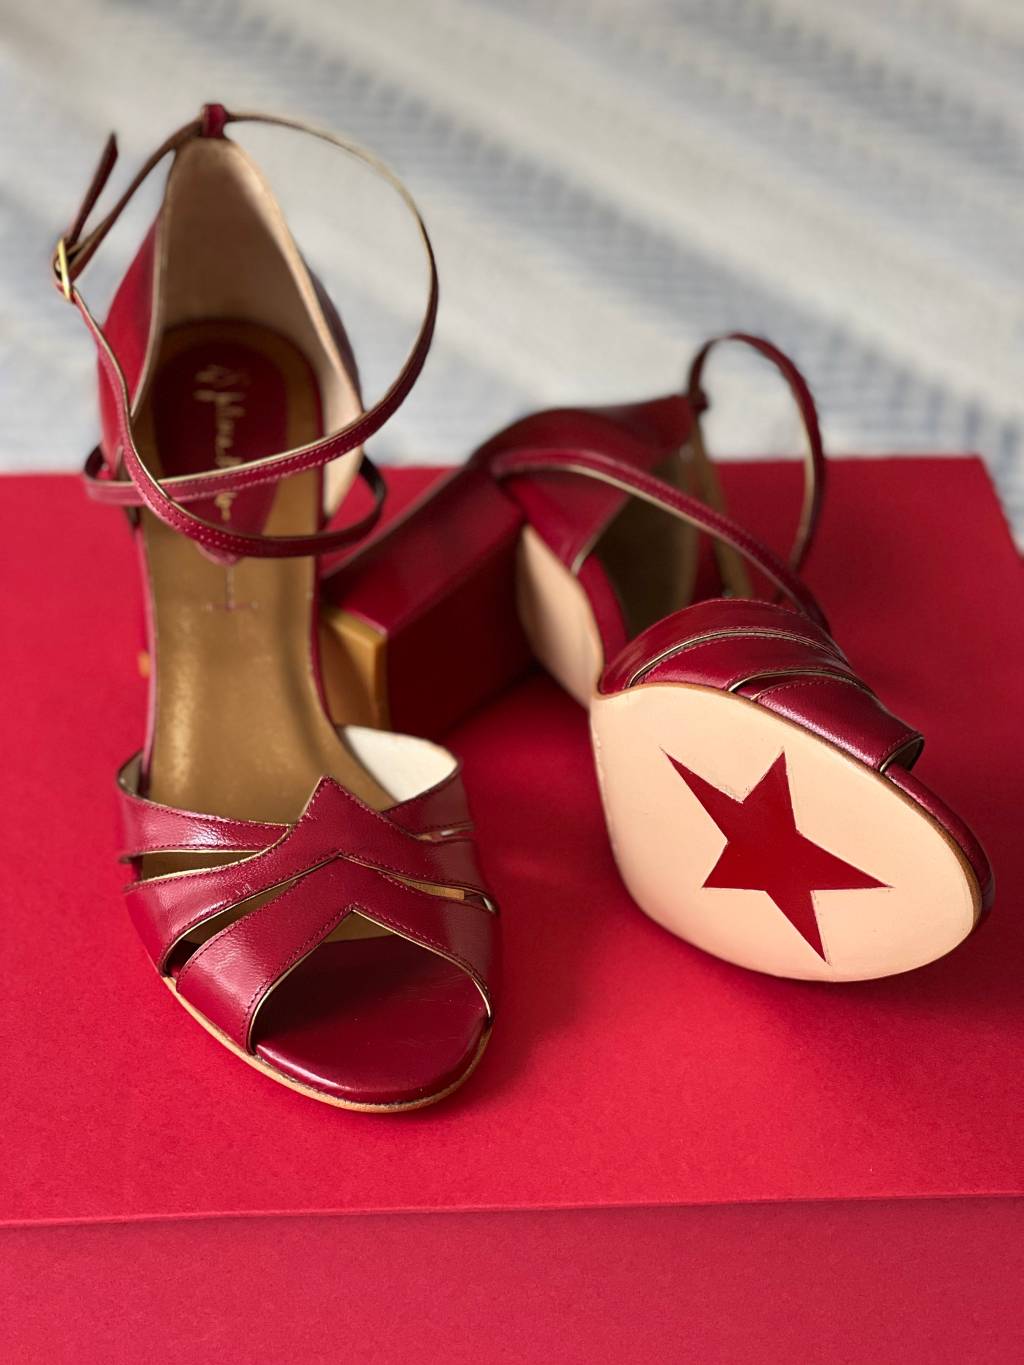 Sapatos vermelhos de salto alto exibem estrela na sola.